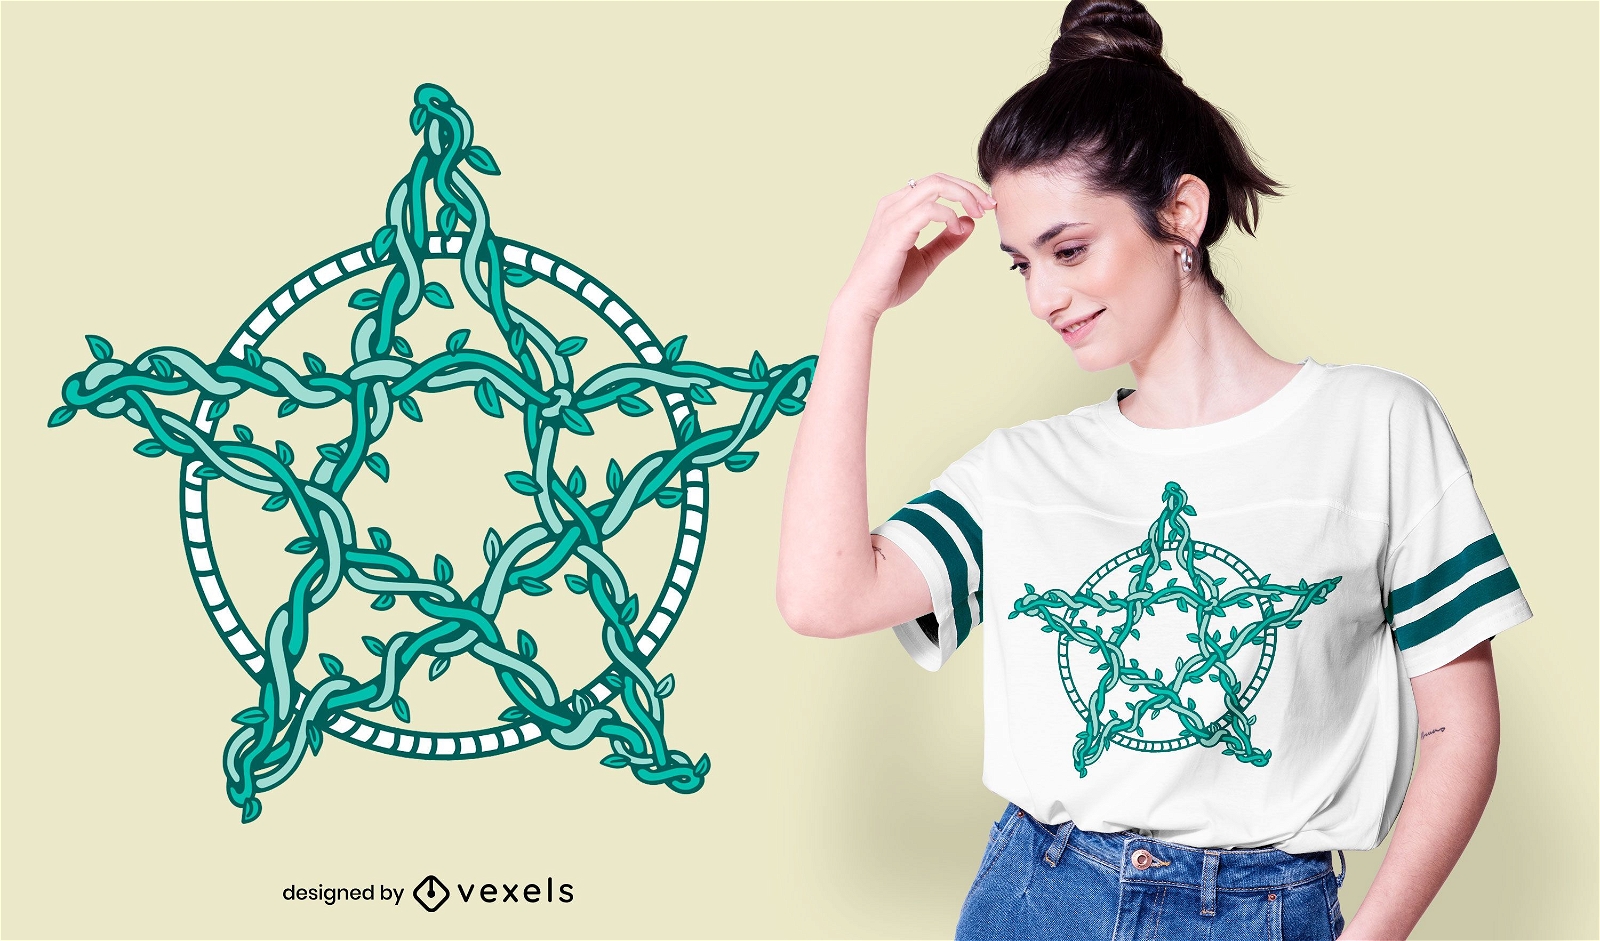 Pentagram star vines t-shirt design